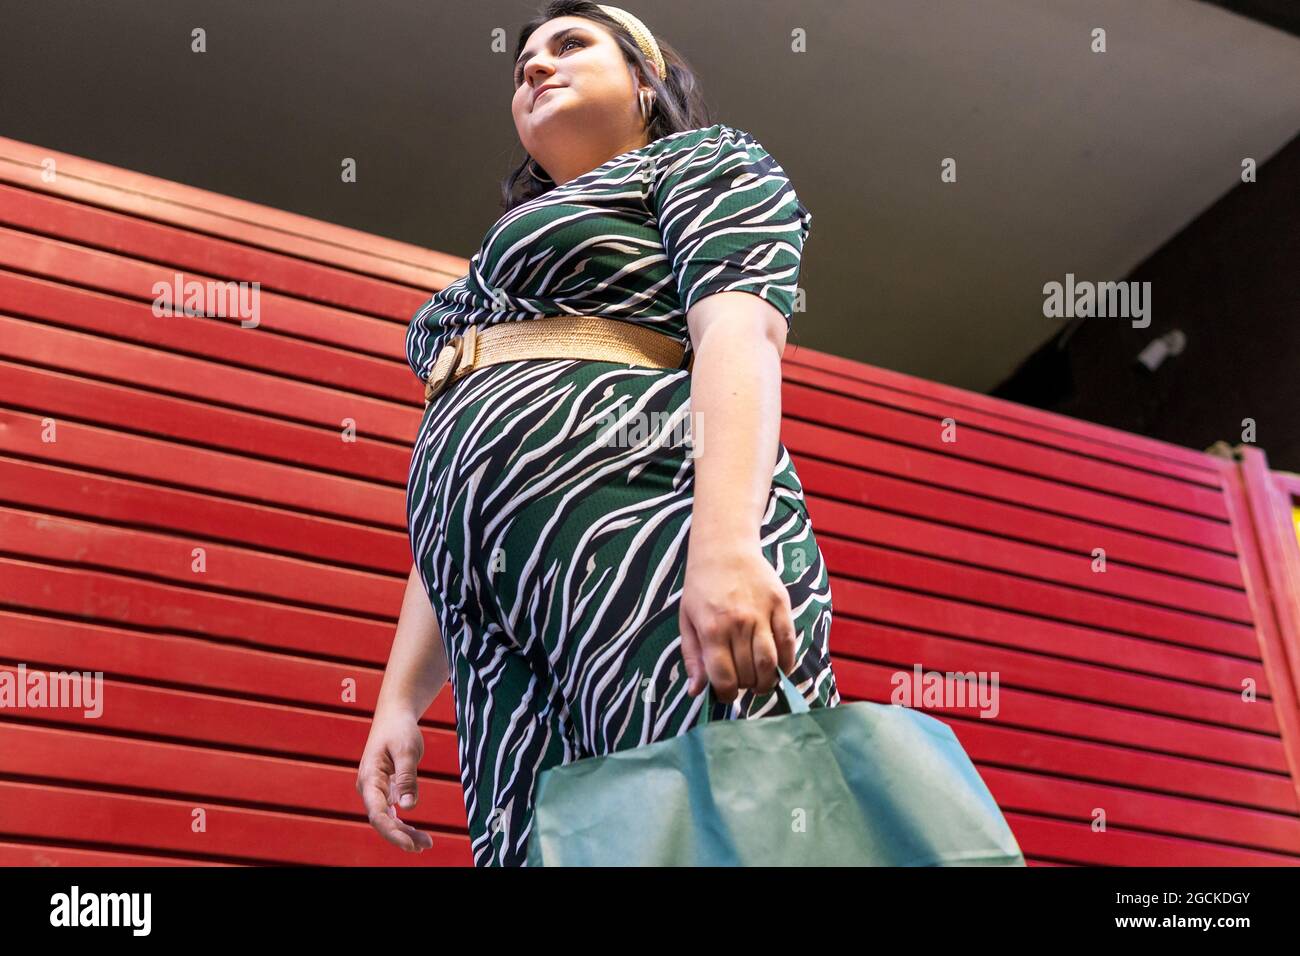 Vista laterale ad angolo basso della giovane donna giovane e curvy in un abito elegante con stampa geometrica che trasporta borse per la spesa mentre si trova vicino al muro a strisce rosse in c. Foto Stock